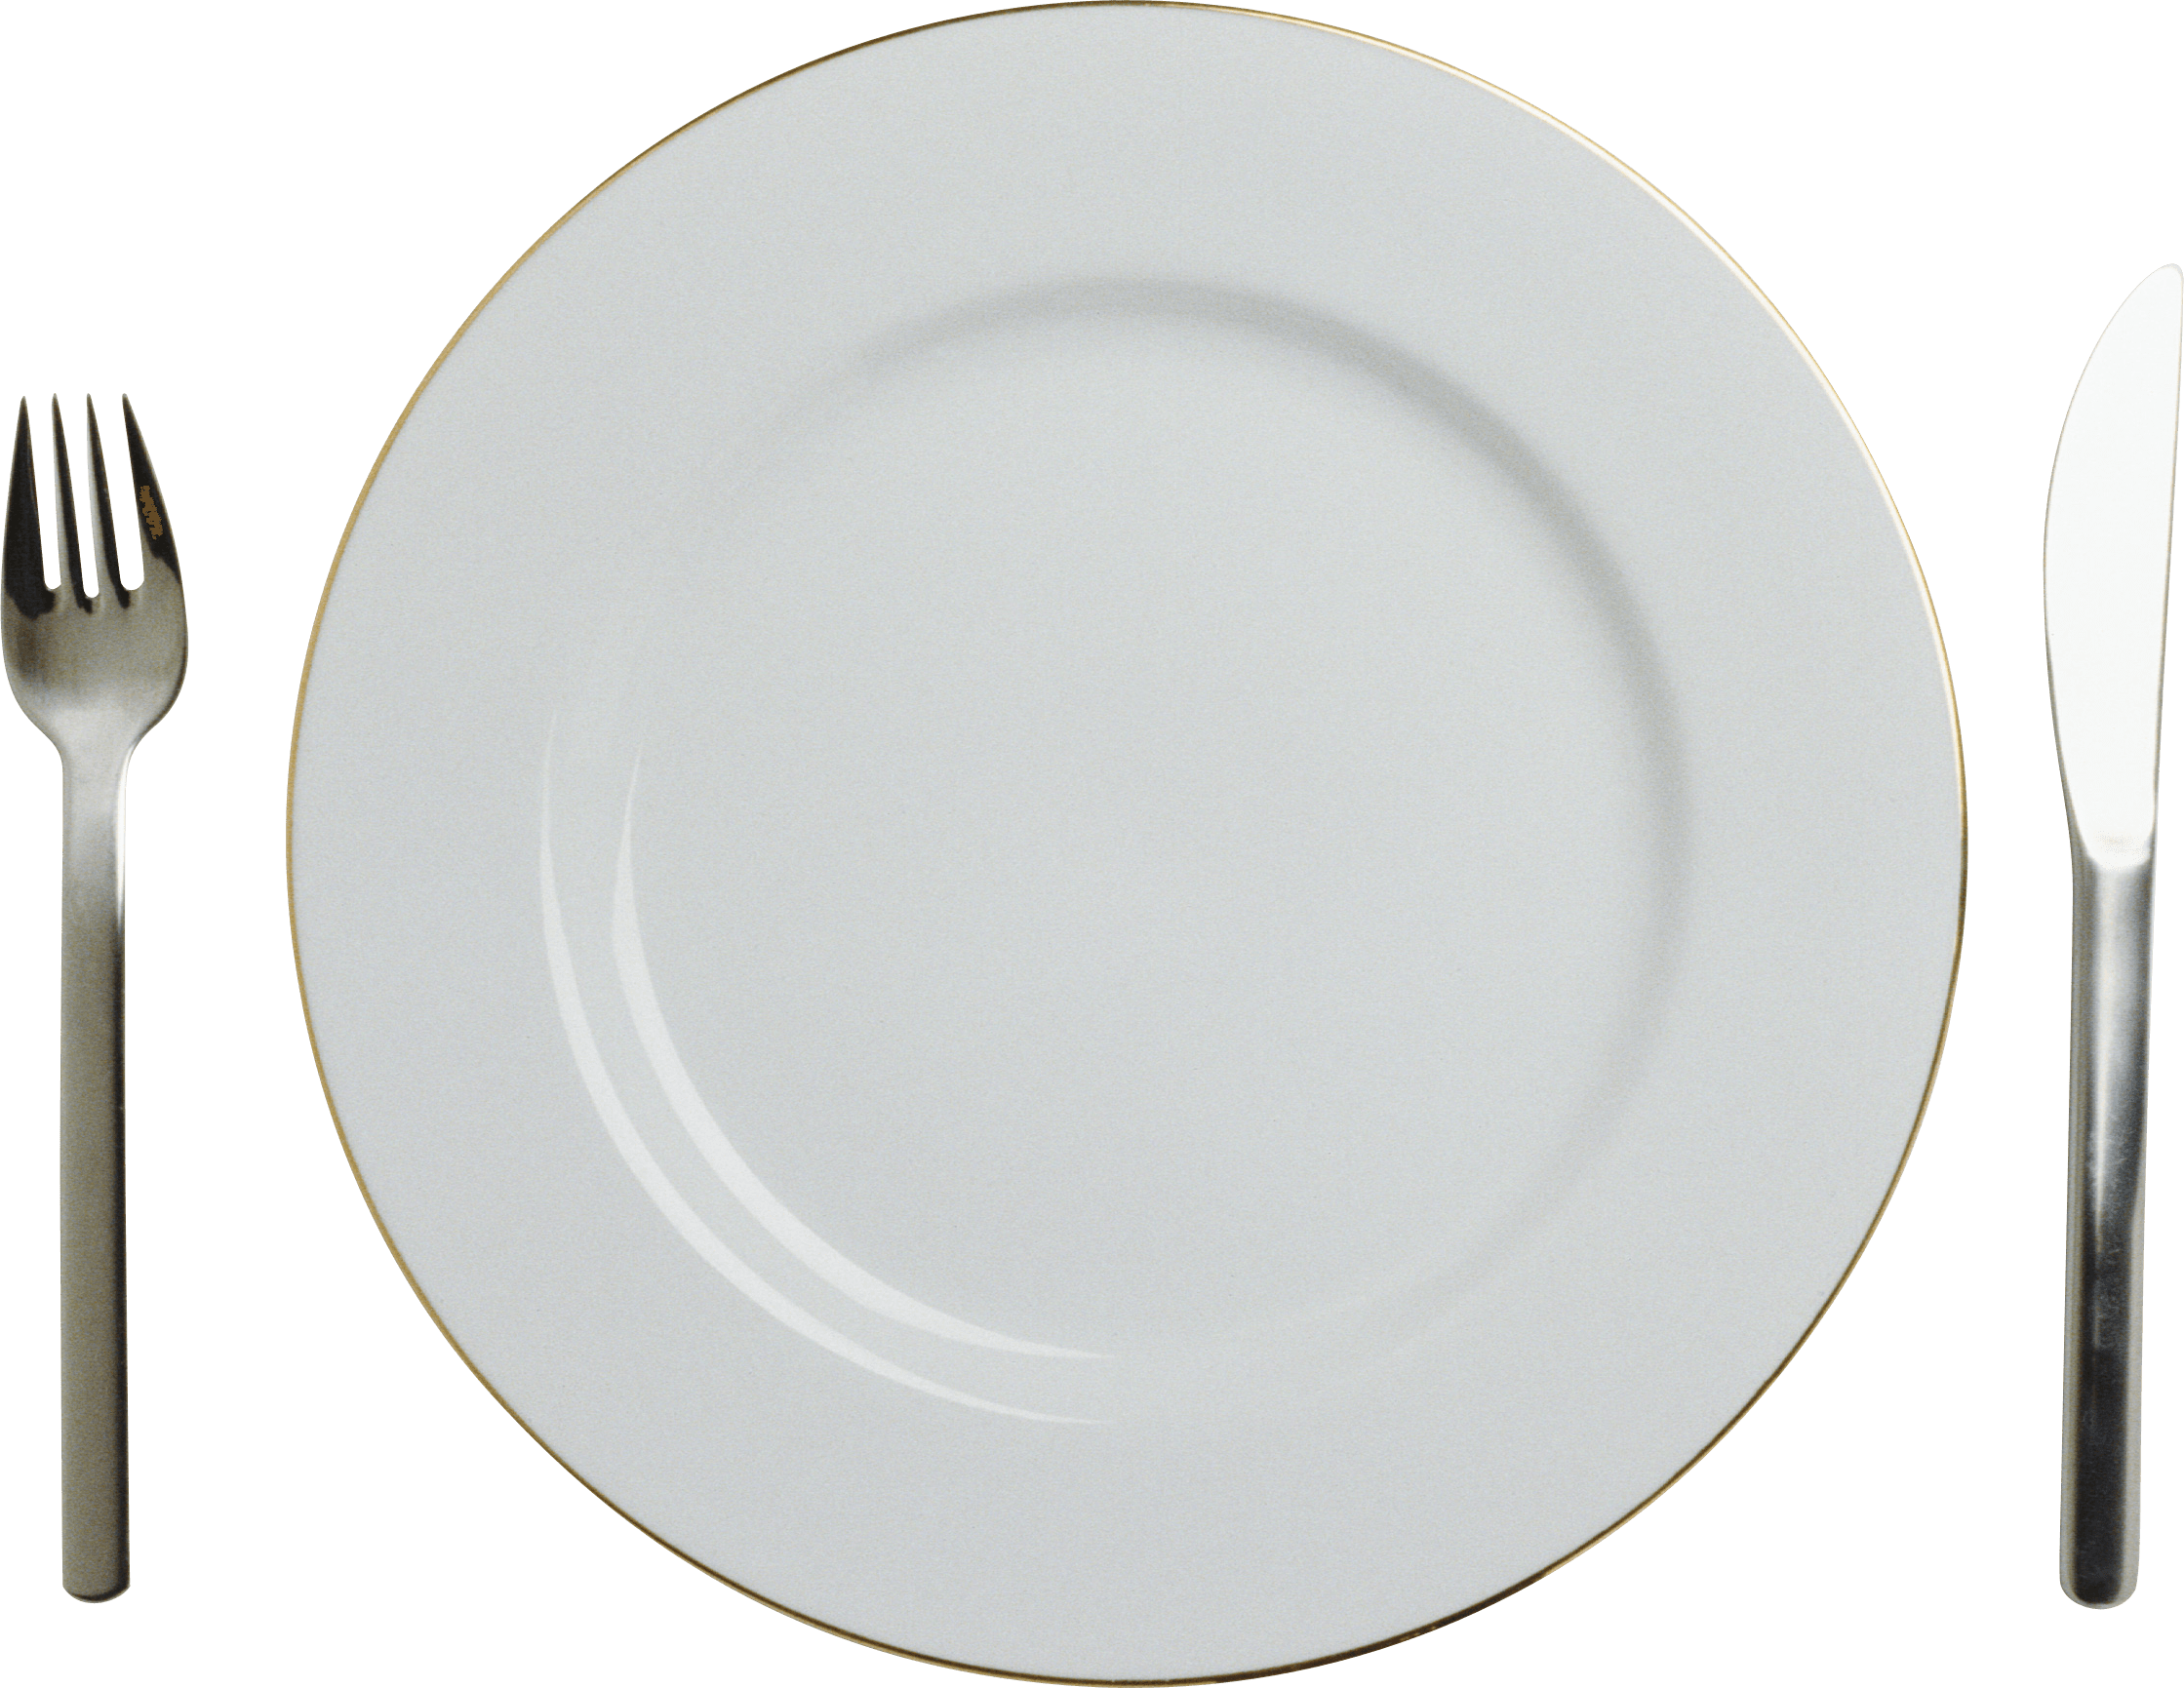  Plate  clipart plate  cutlery Plate  plate  cutlery 